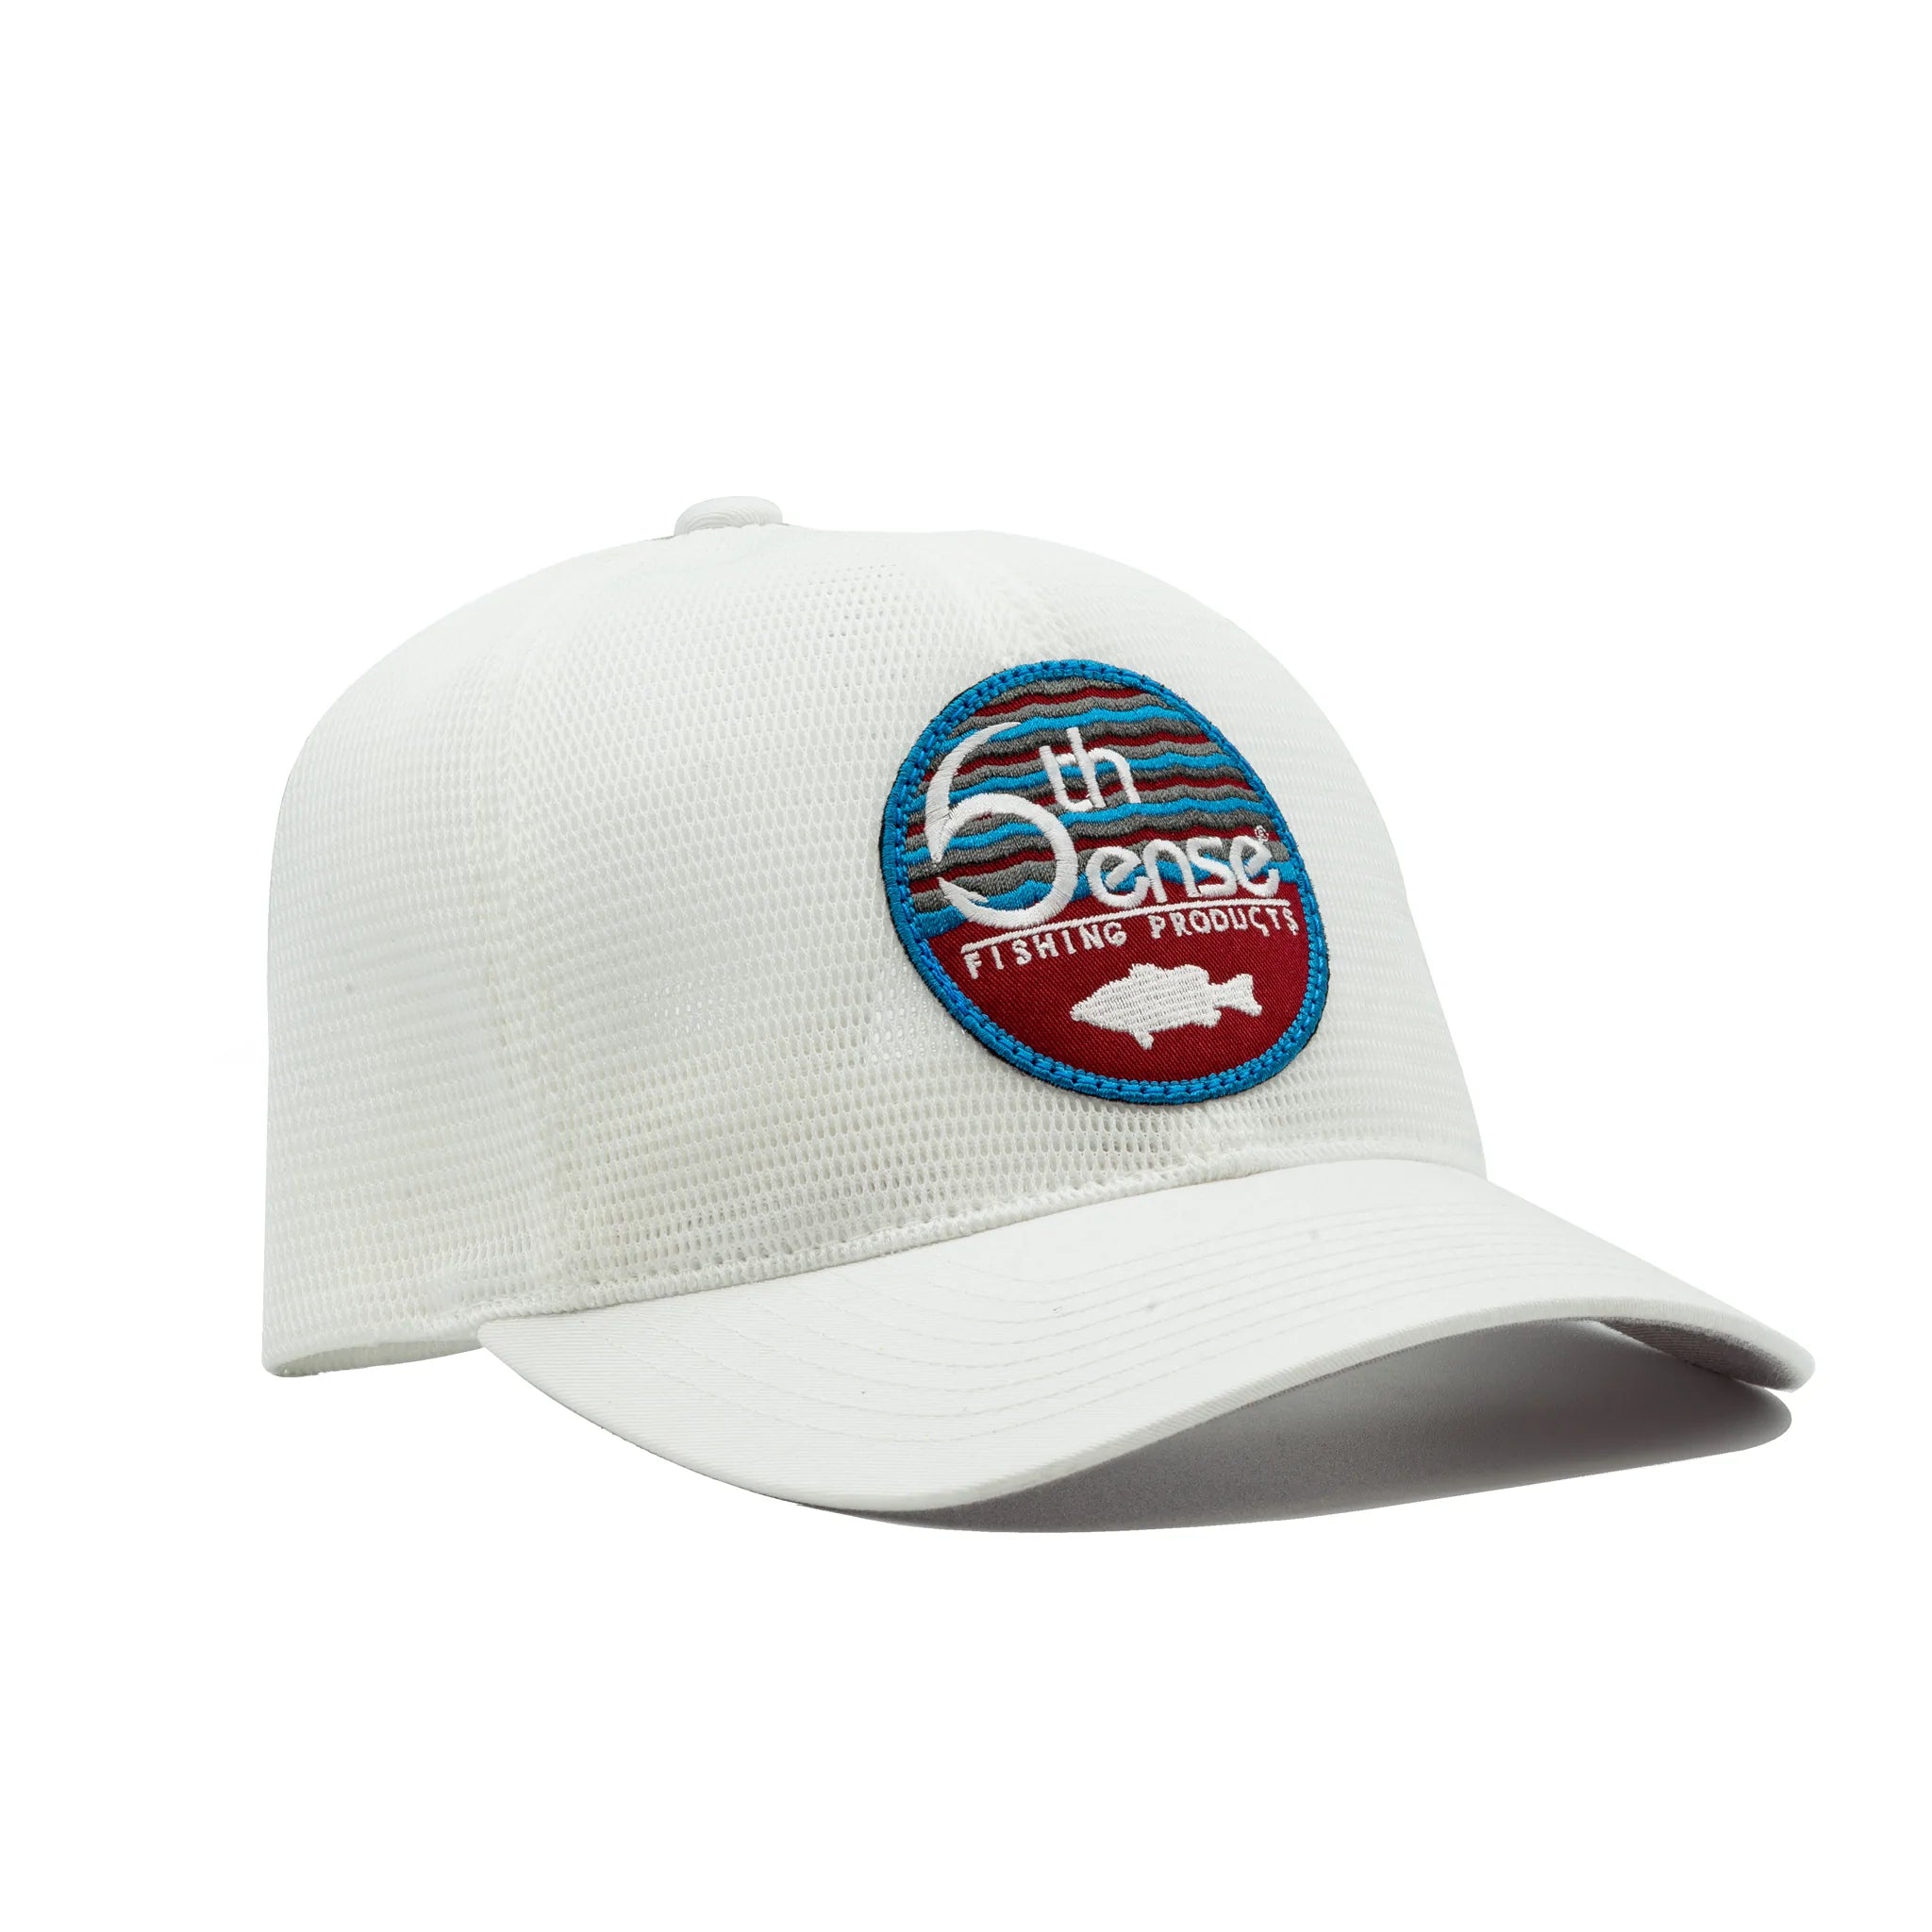 6th Sense Fishing - Premium Hats - Captain Angler - FishLite - White